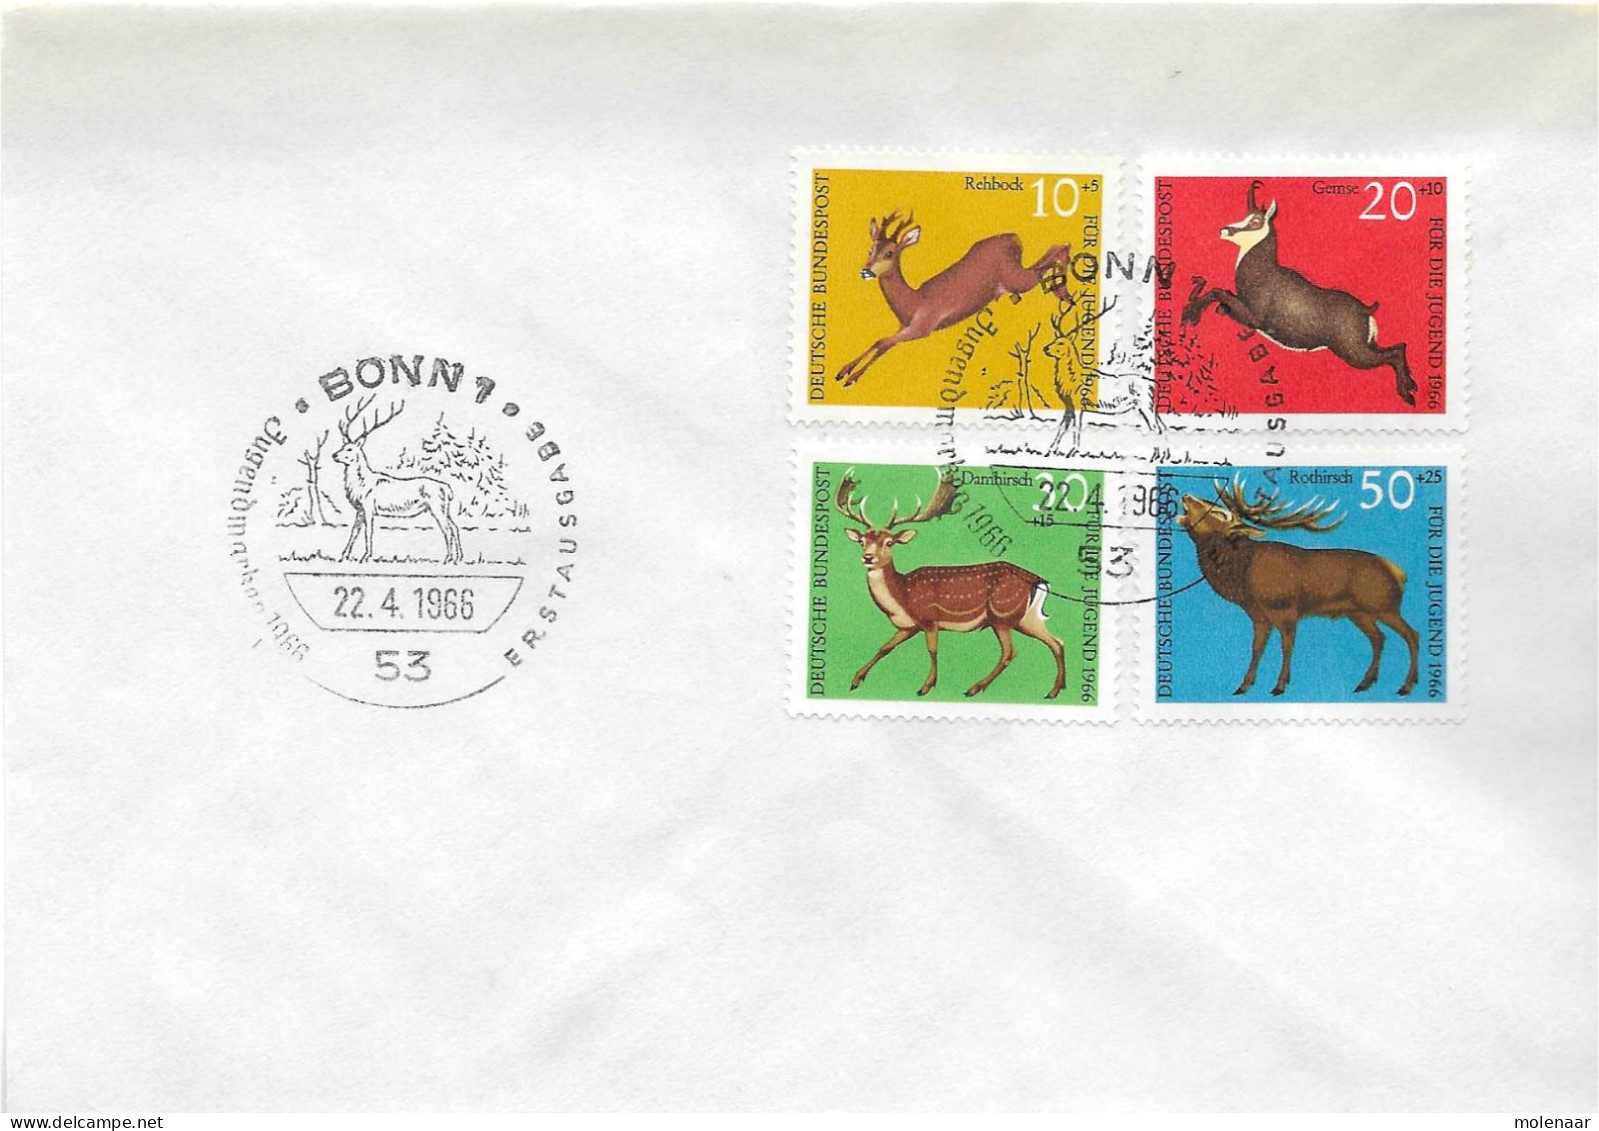 Postzegels > Europa > Duitsland > West-Duitsland > 1960-1969 > Brief Met No. 511-514 (17380) - Brieven En Documenten